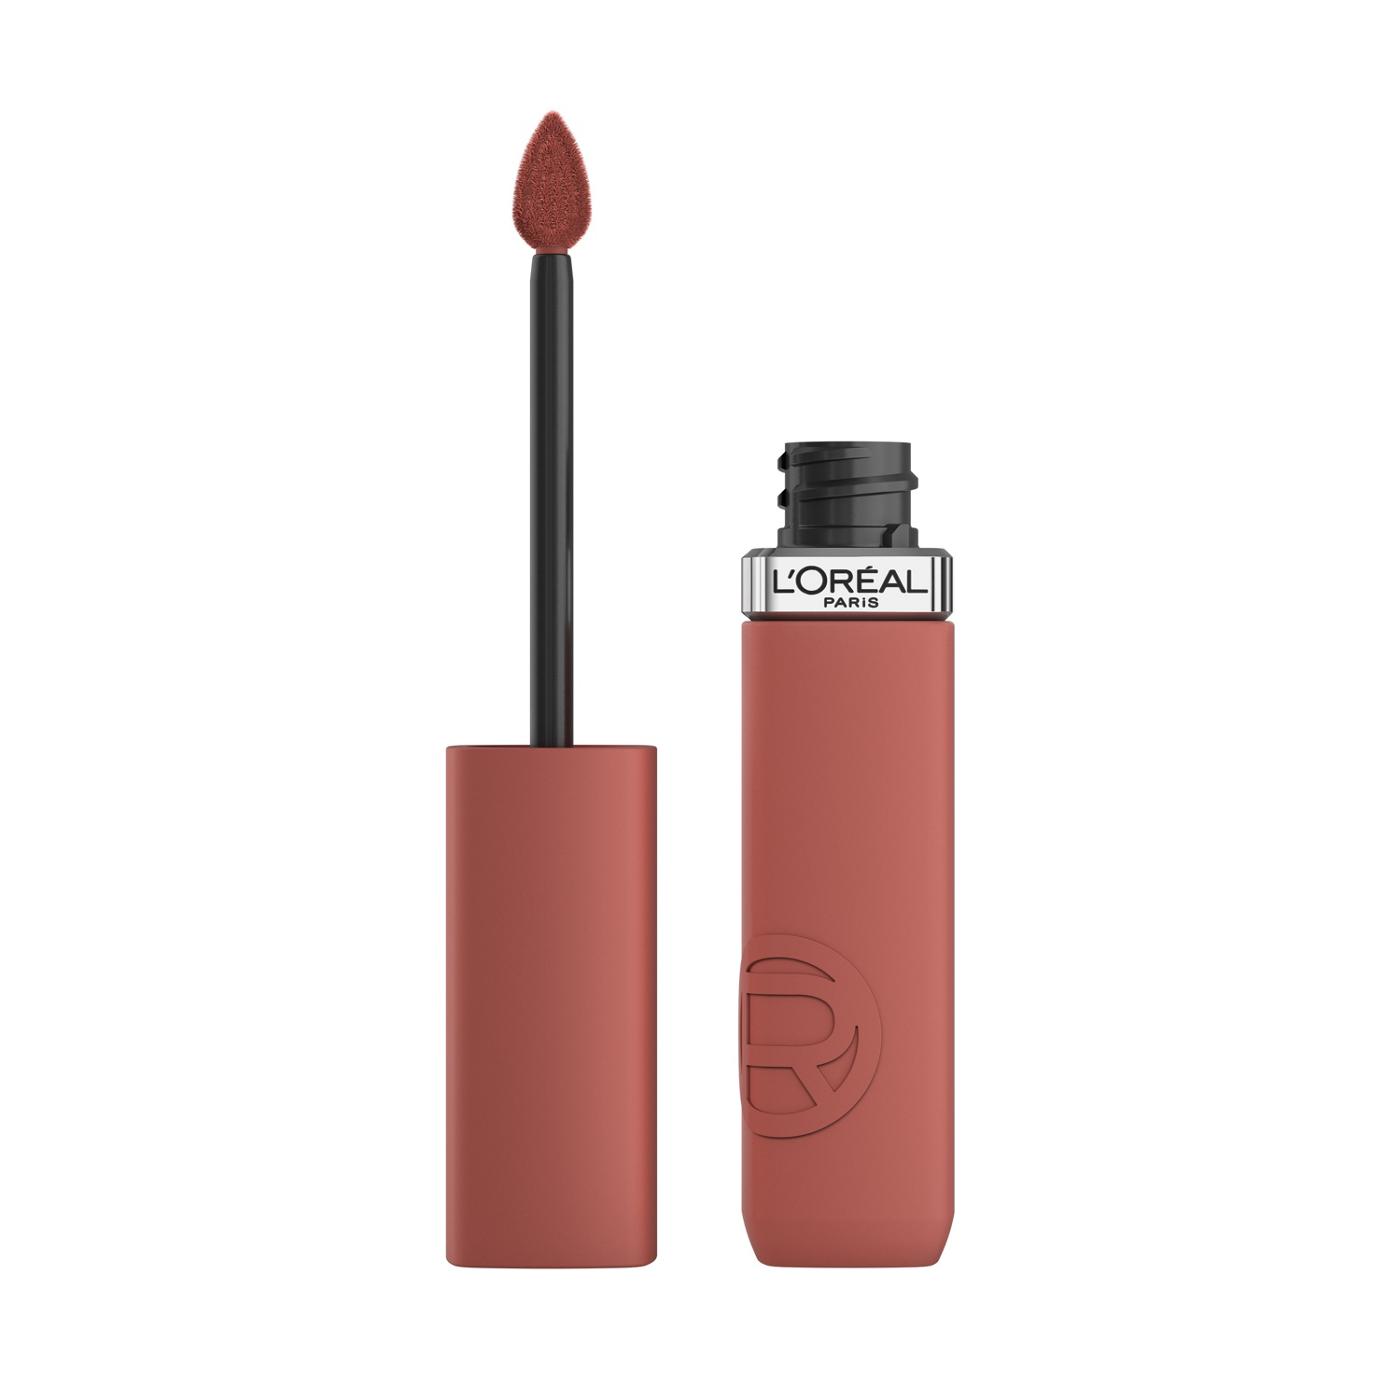 L'Oréal Paris Infallible Le Matte Resistance Liquid Lipstick - Worth It Medium; image 1 of 6